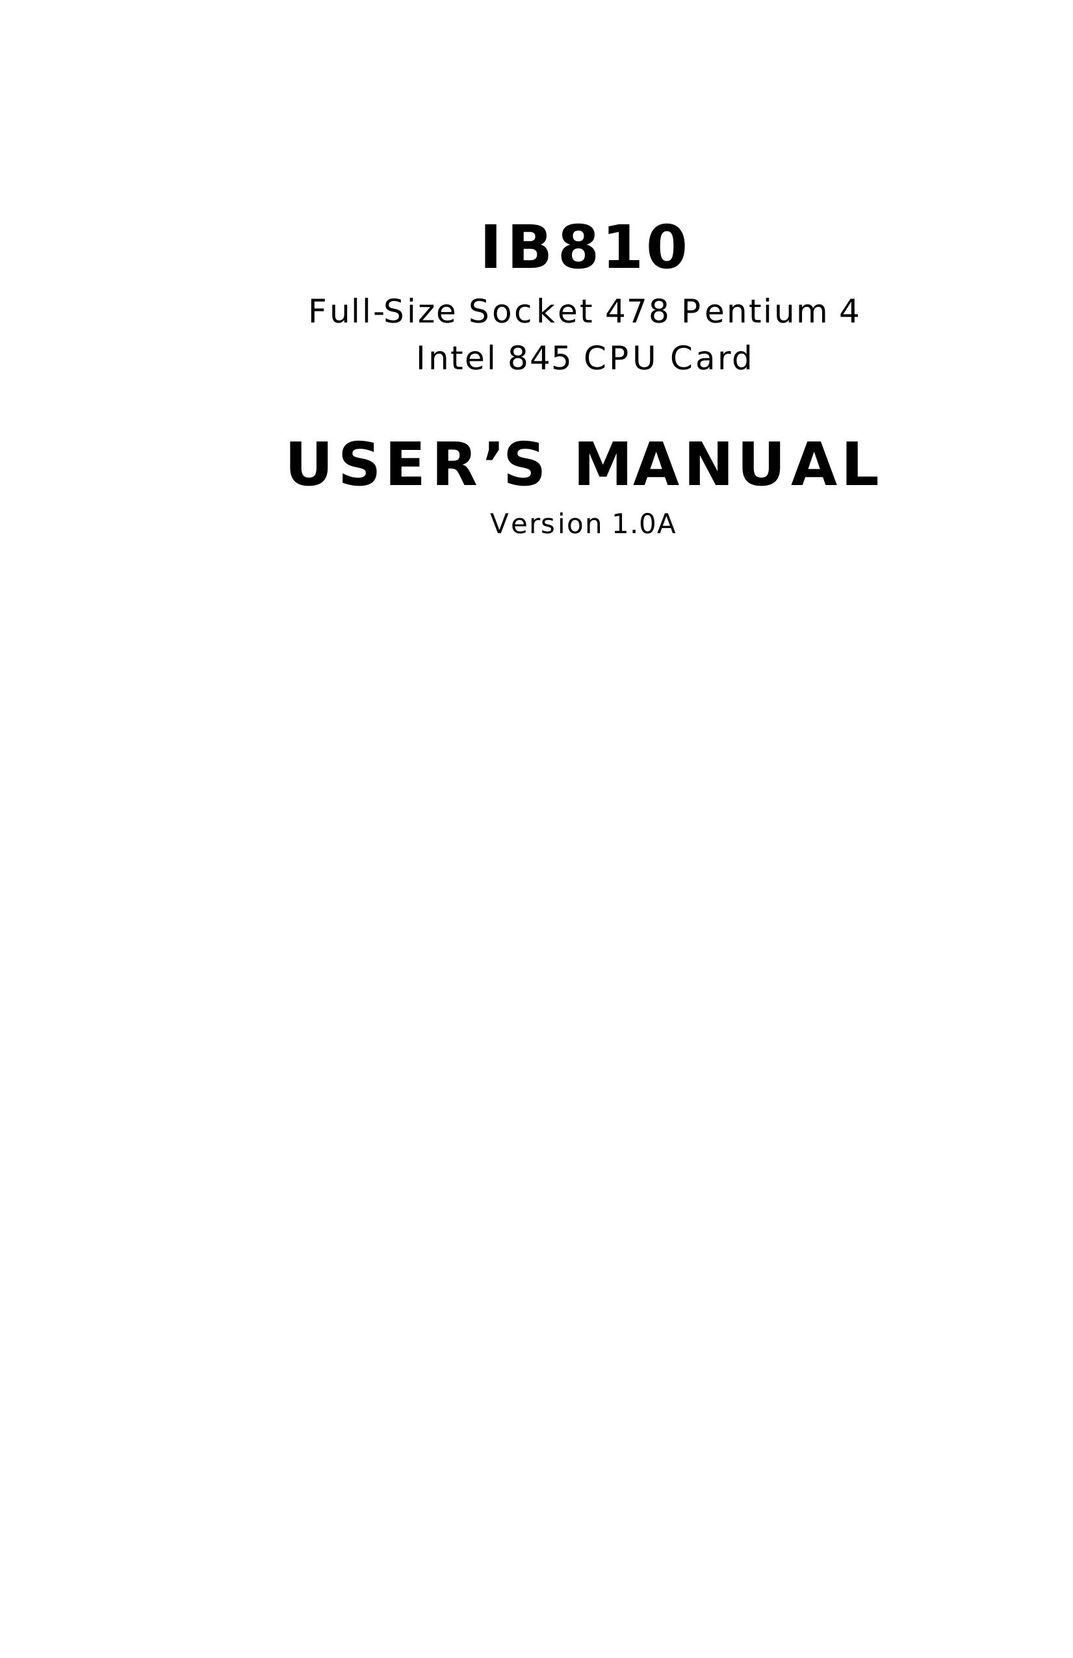 Socket Mobile IB810 Network Card User Manual